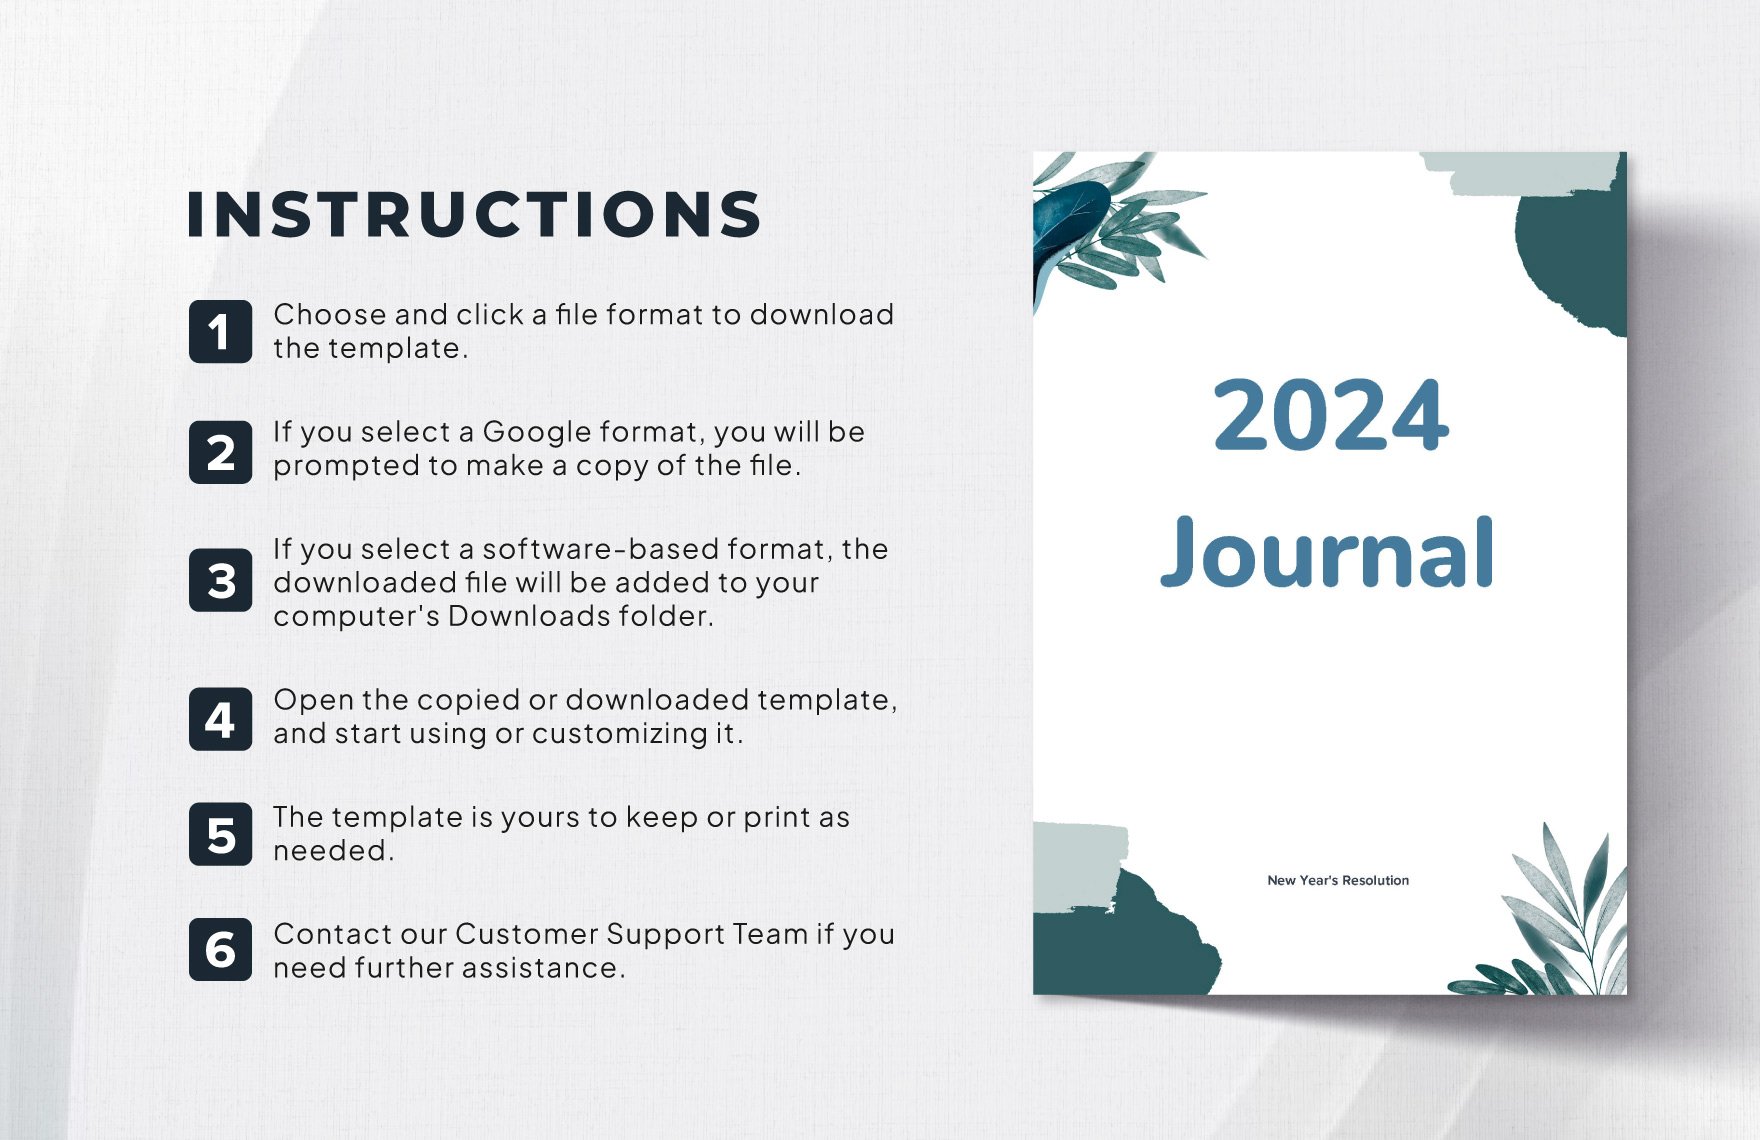 2024 Journal Template